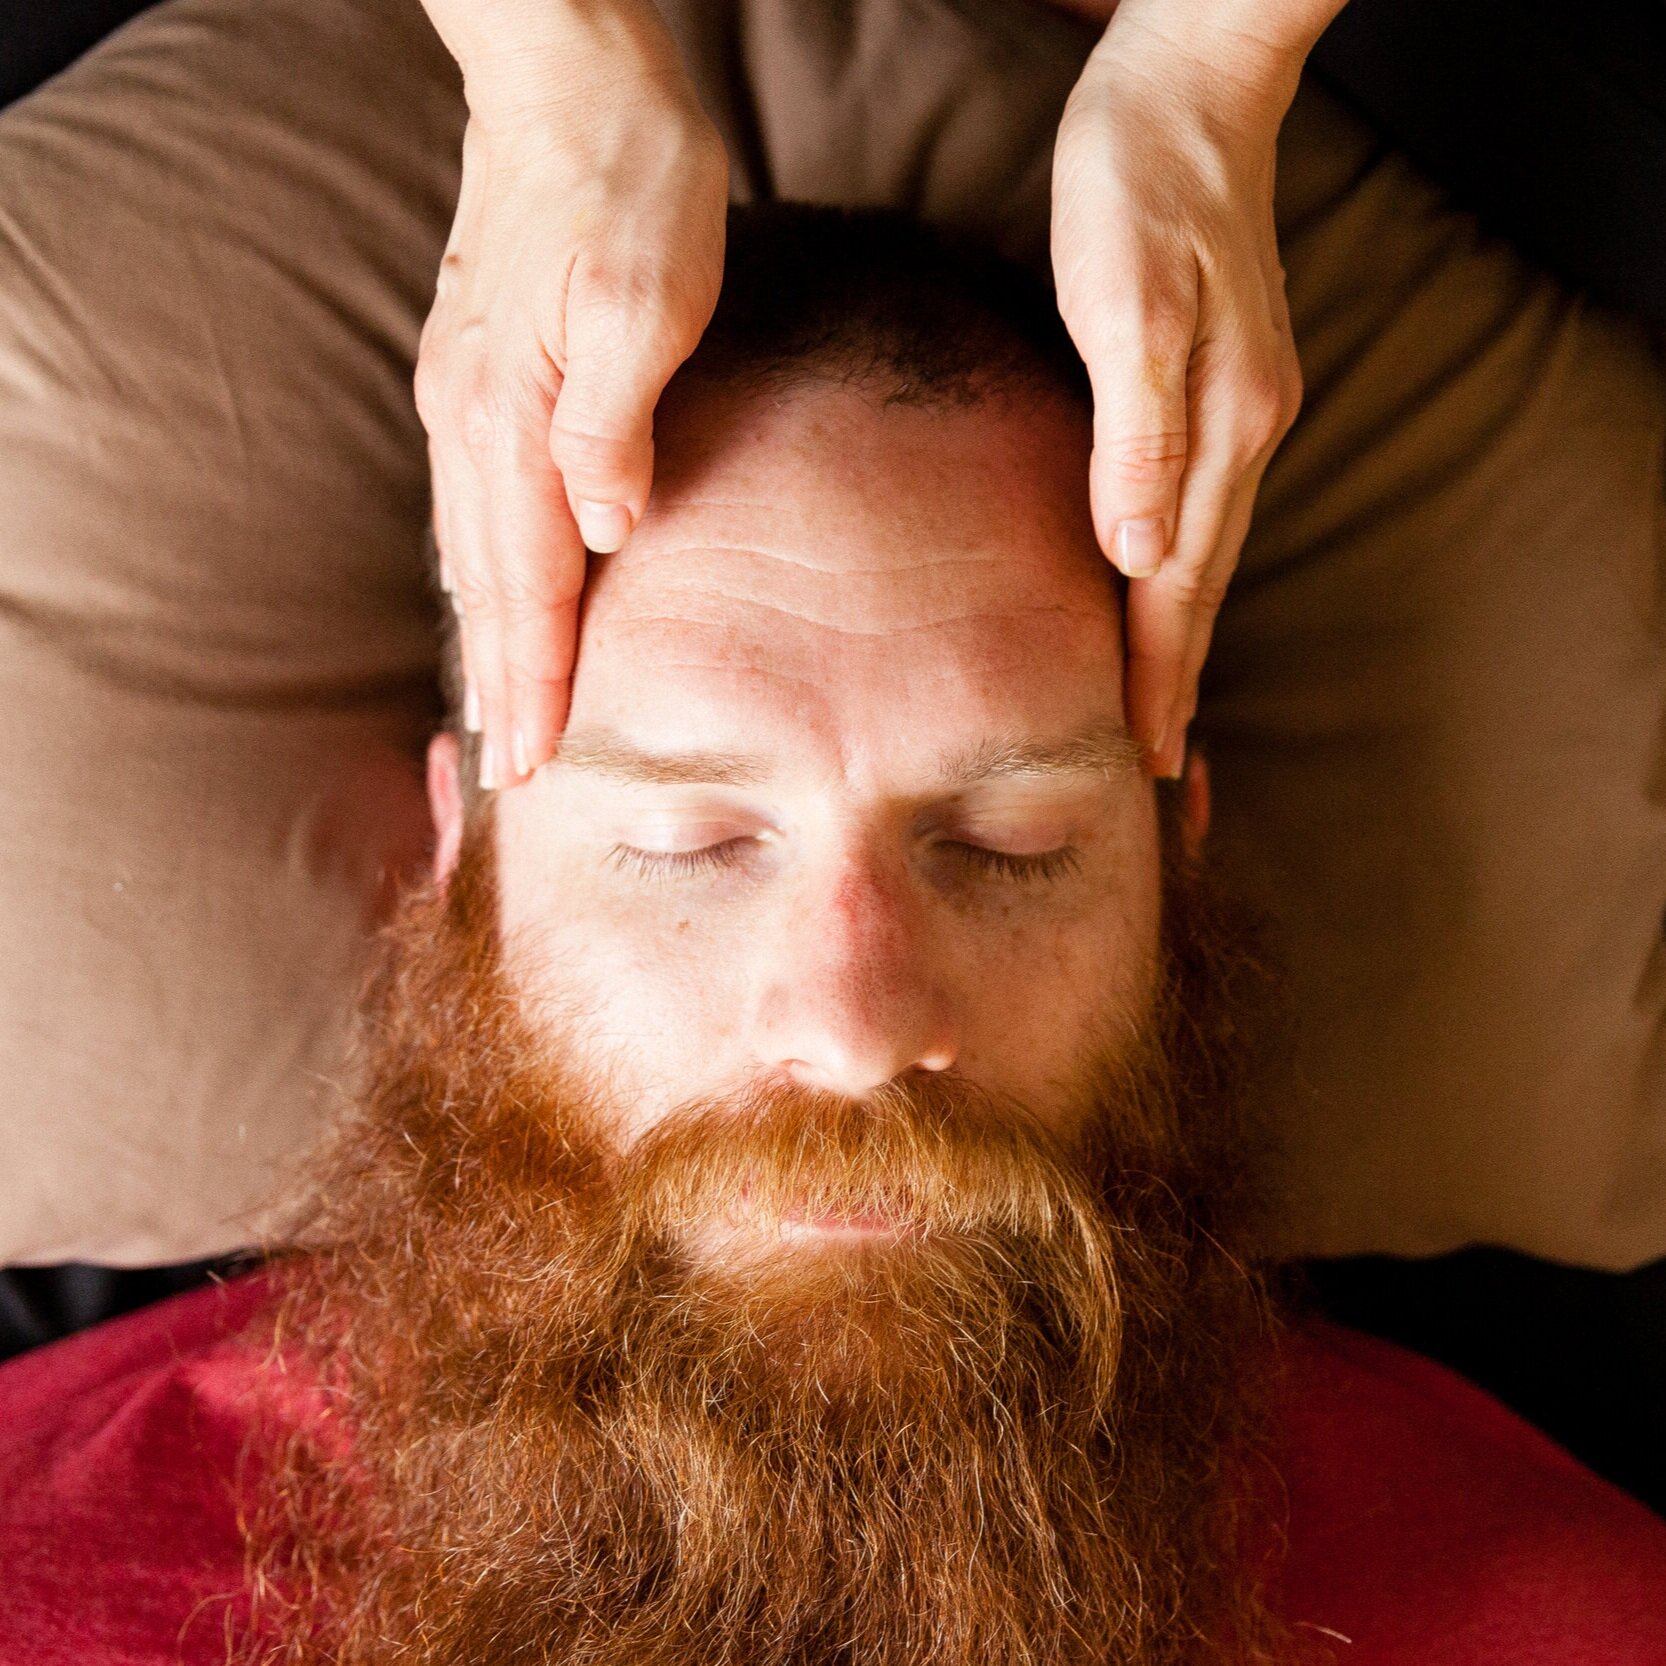 therapeutic-massage-portland-woven-body-thai-079.jpg